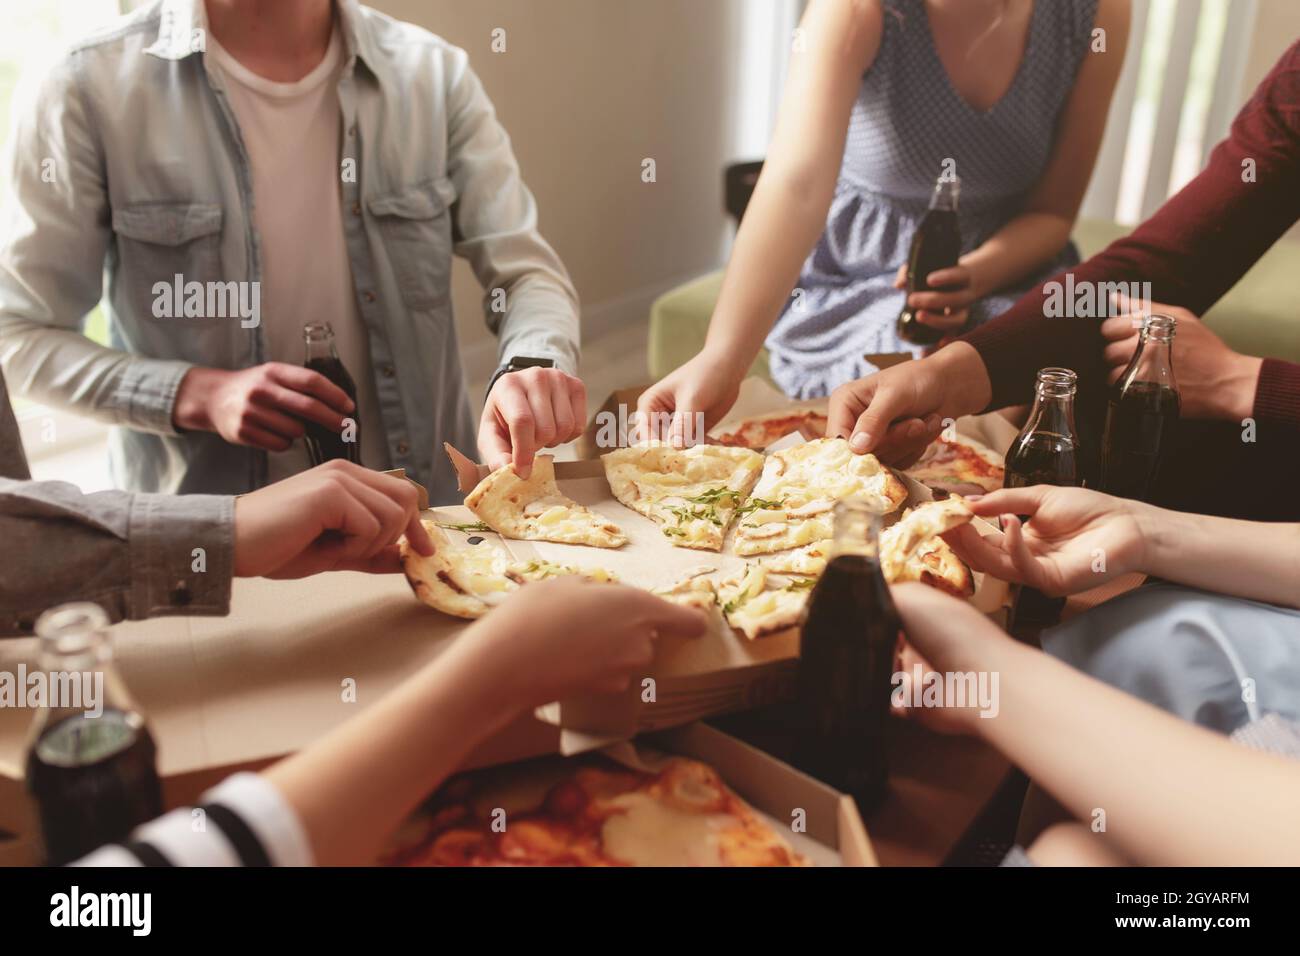 Pala Pizza - Nunca está demás compartir con tus amigos y